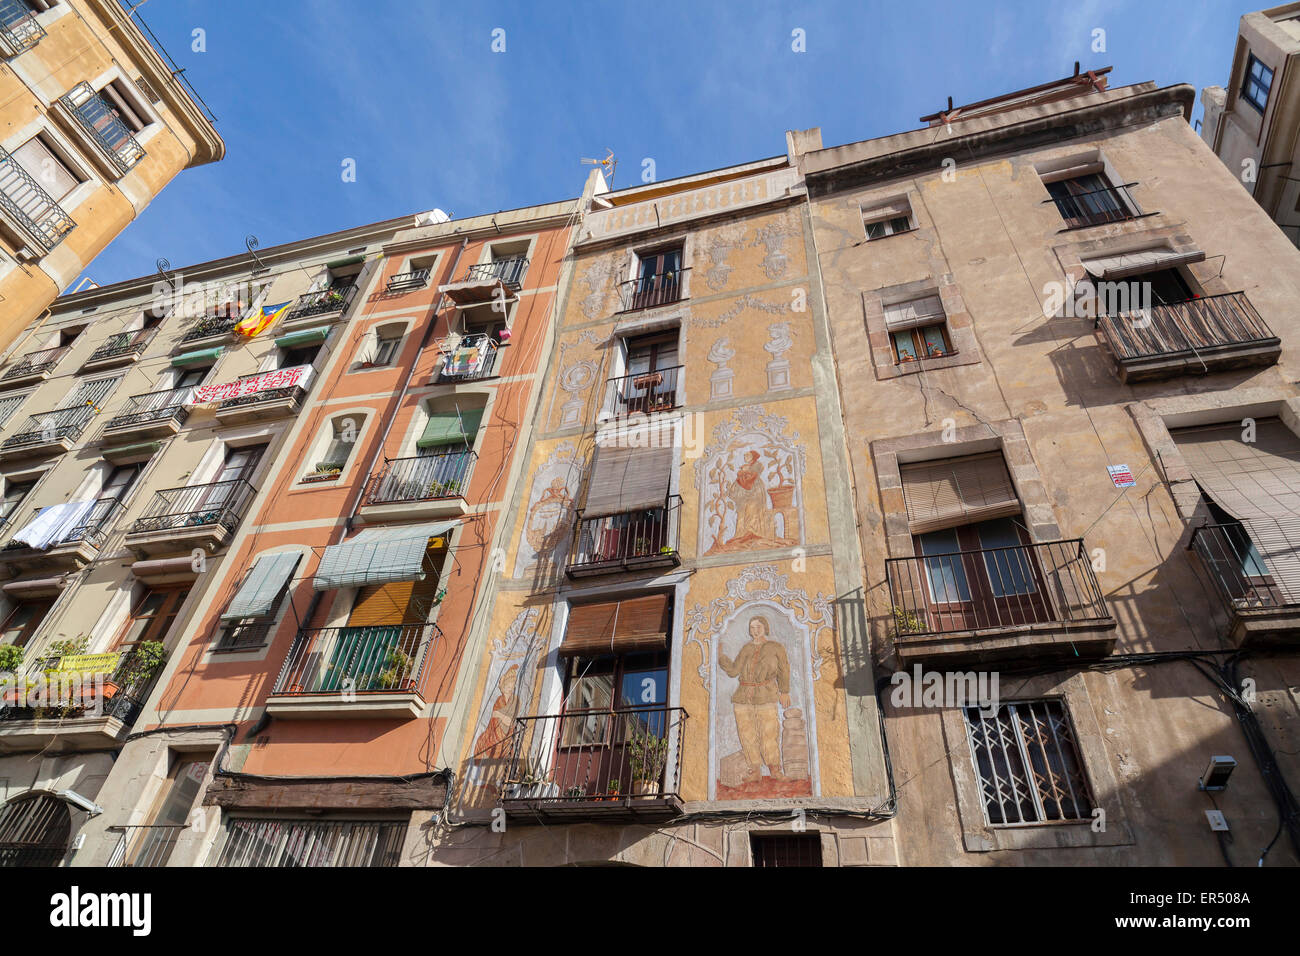 Barcelona.Facade with sgraffitos in Barri Gotic. Stock Photo